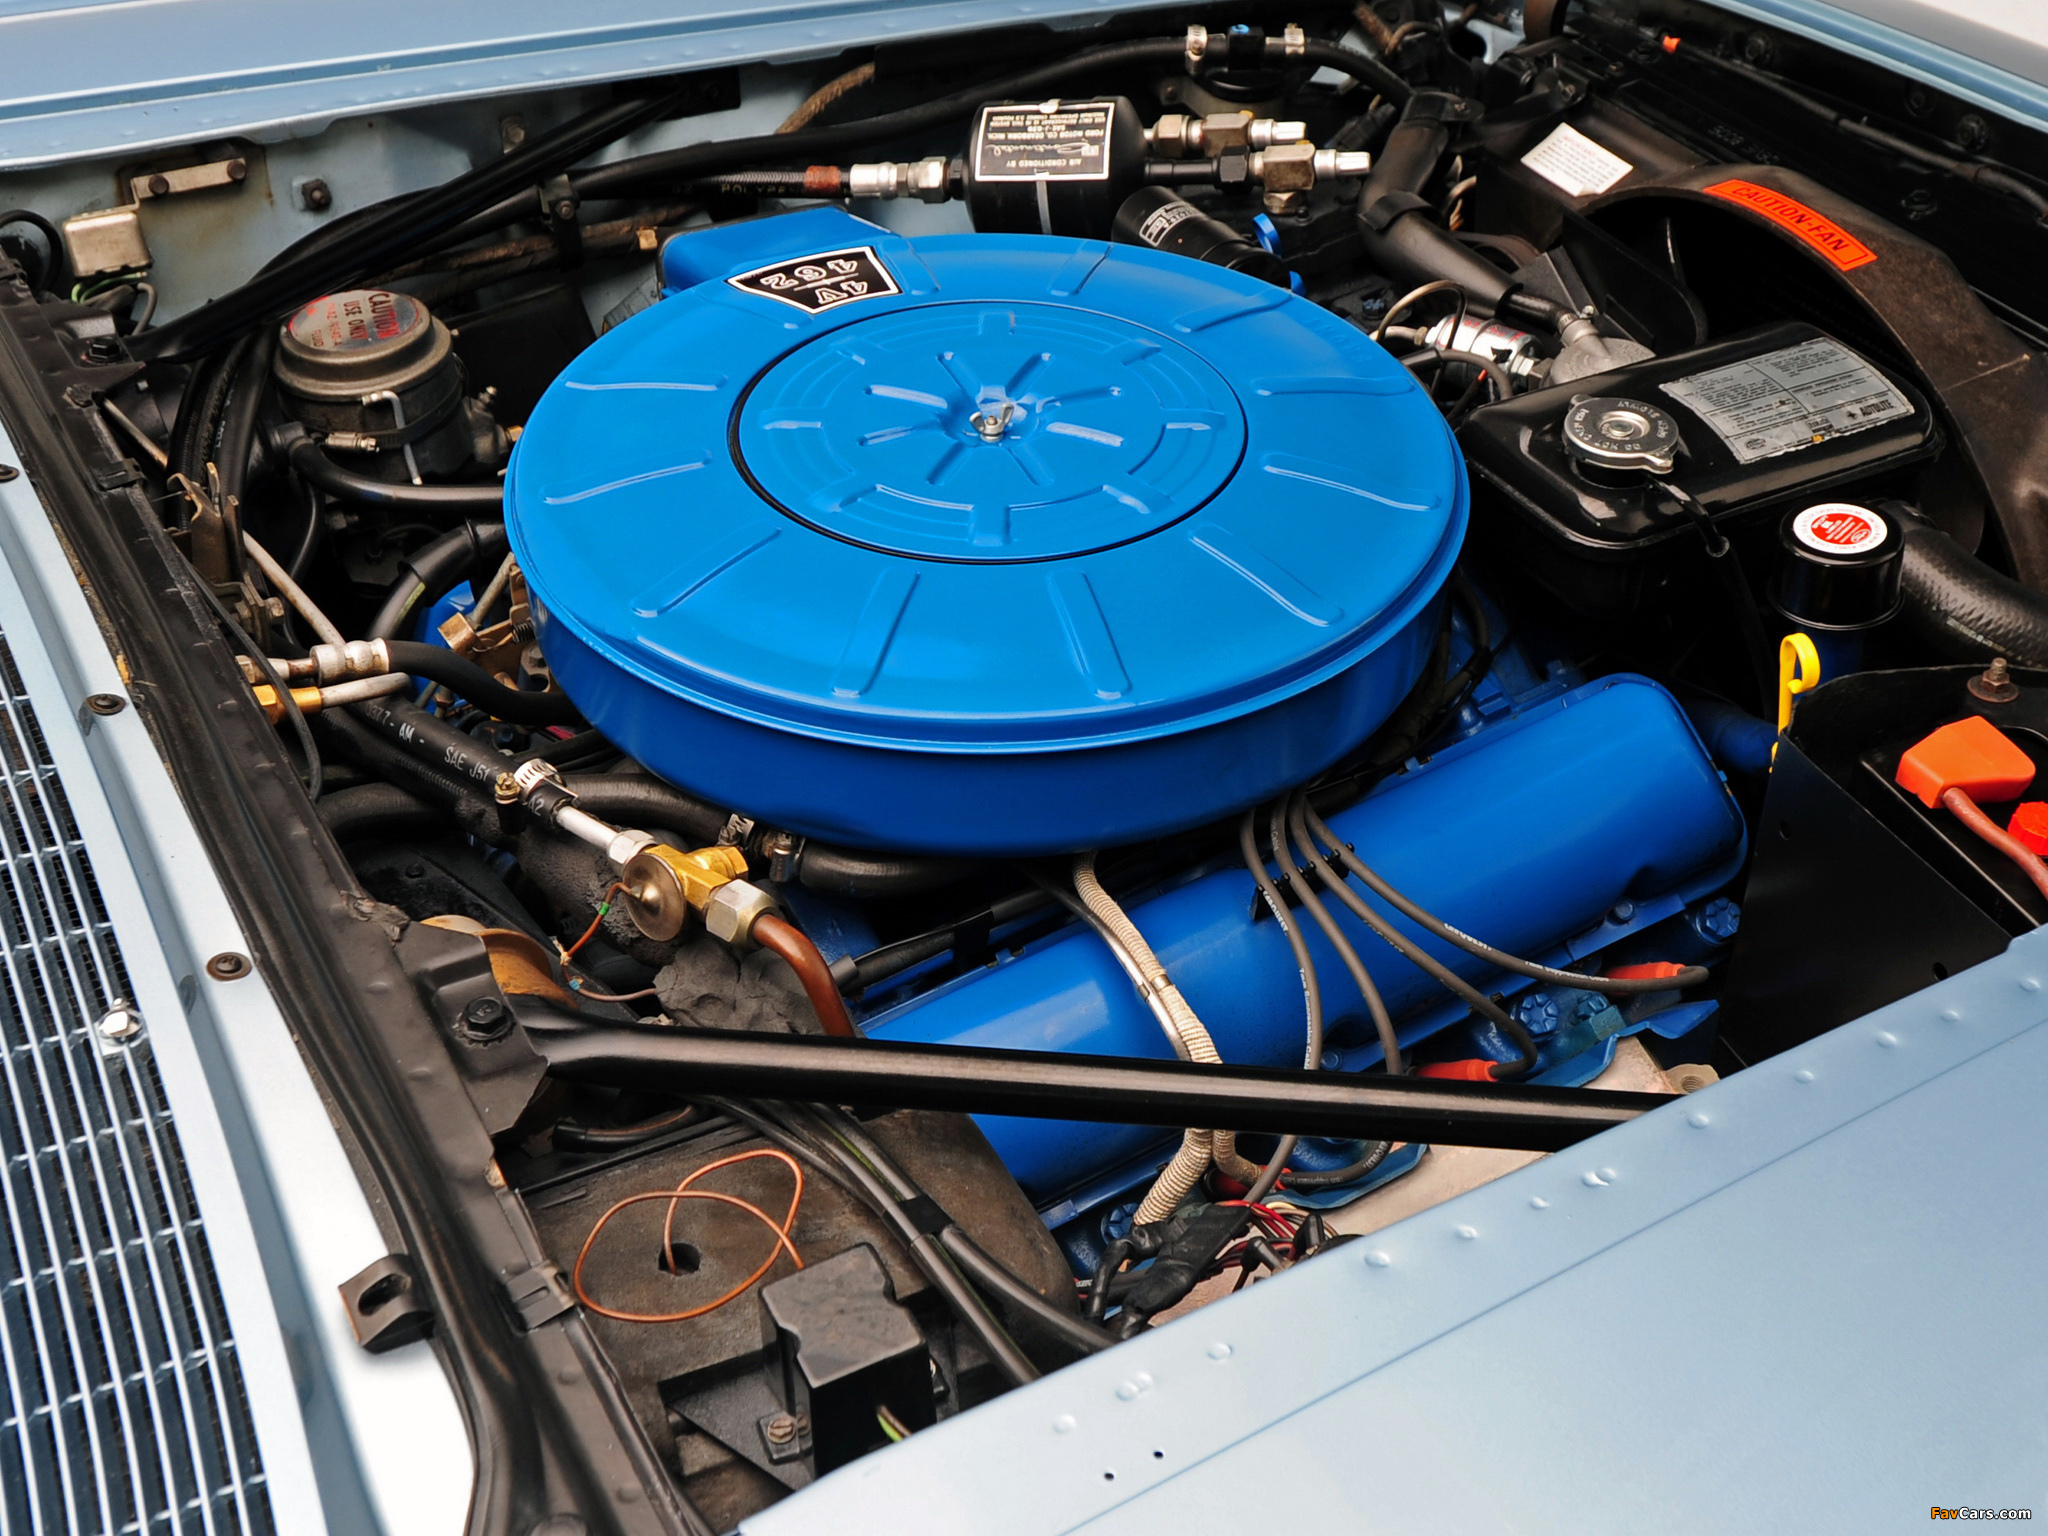 Lincoln Continental Hardtop Coupe 1966 photos (2048 x 1536)